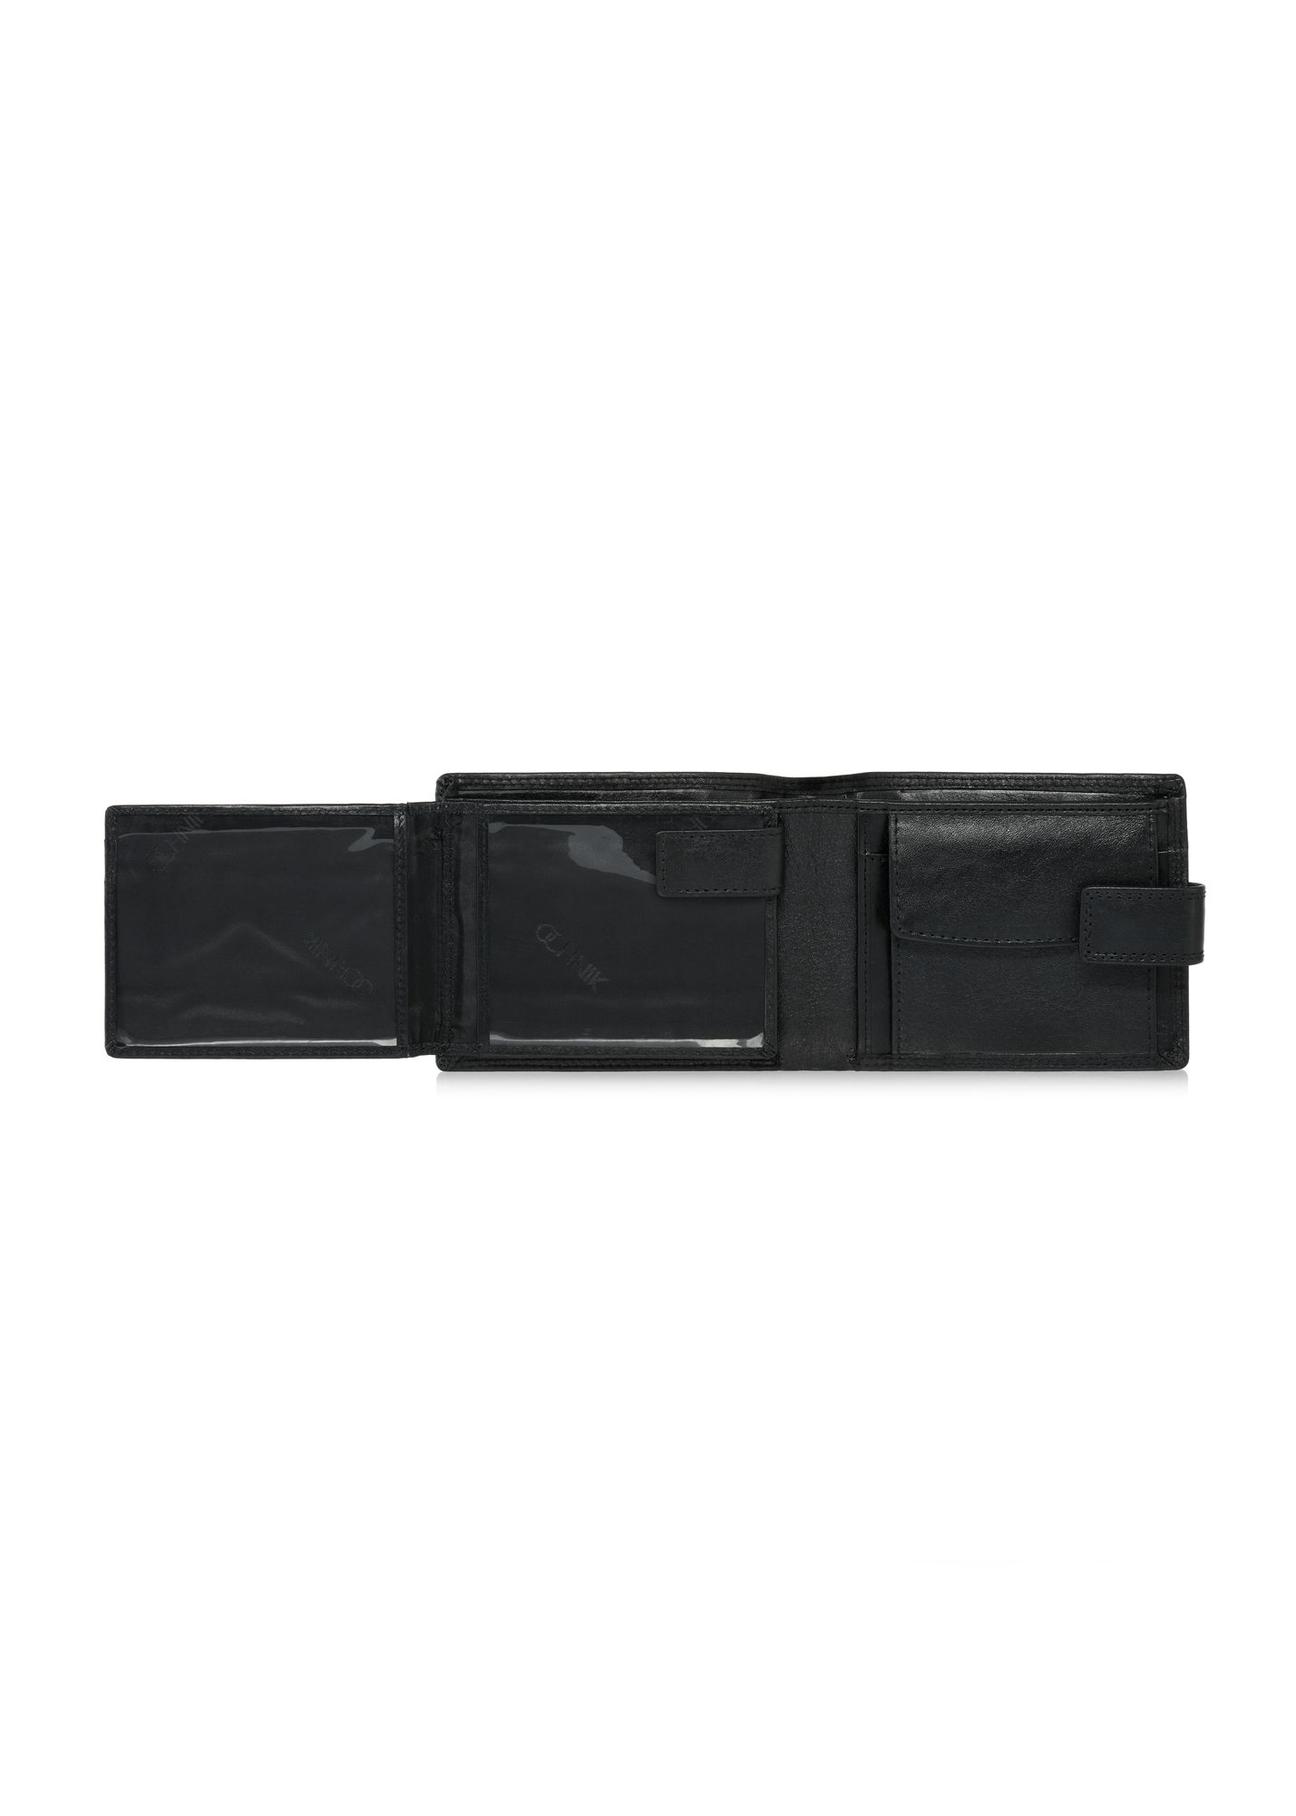 Skórzany zapinany czarny portfel męski PORMS-0606-99(W24)